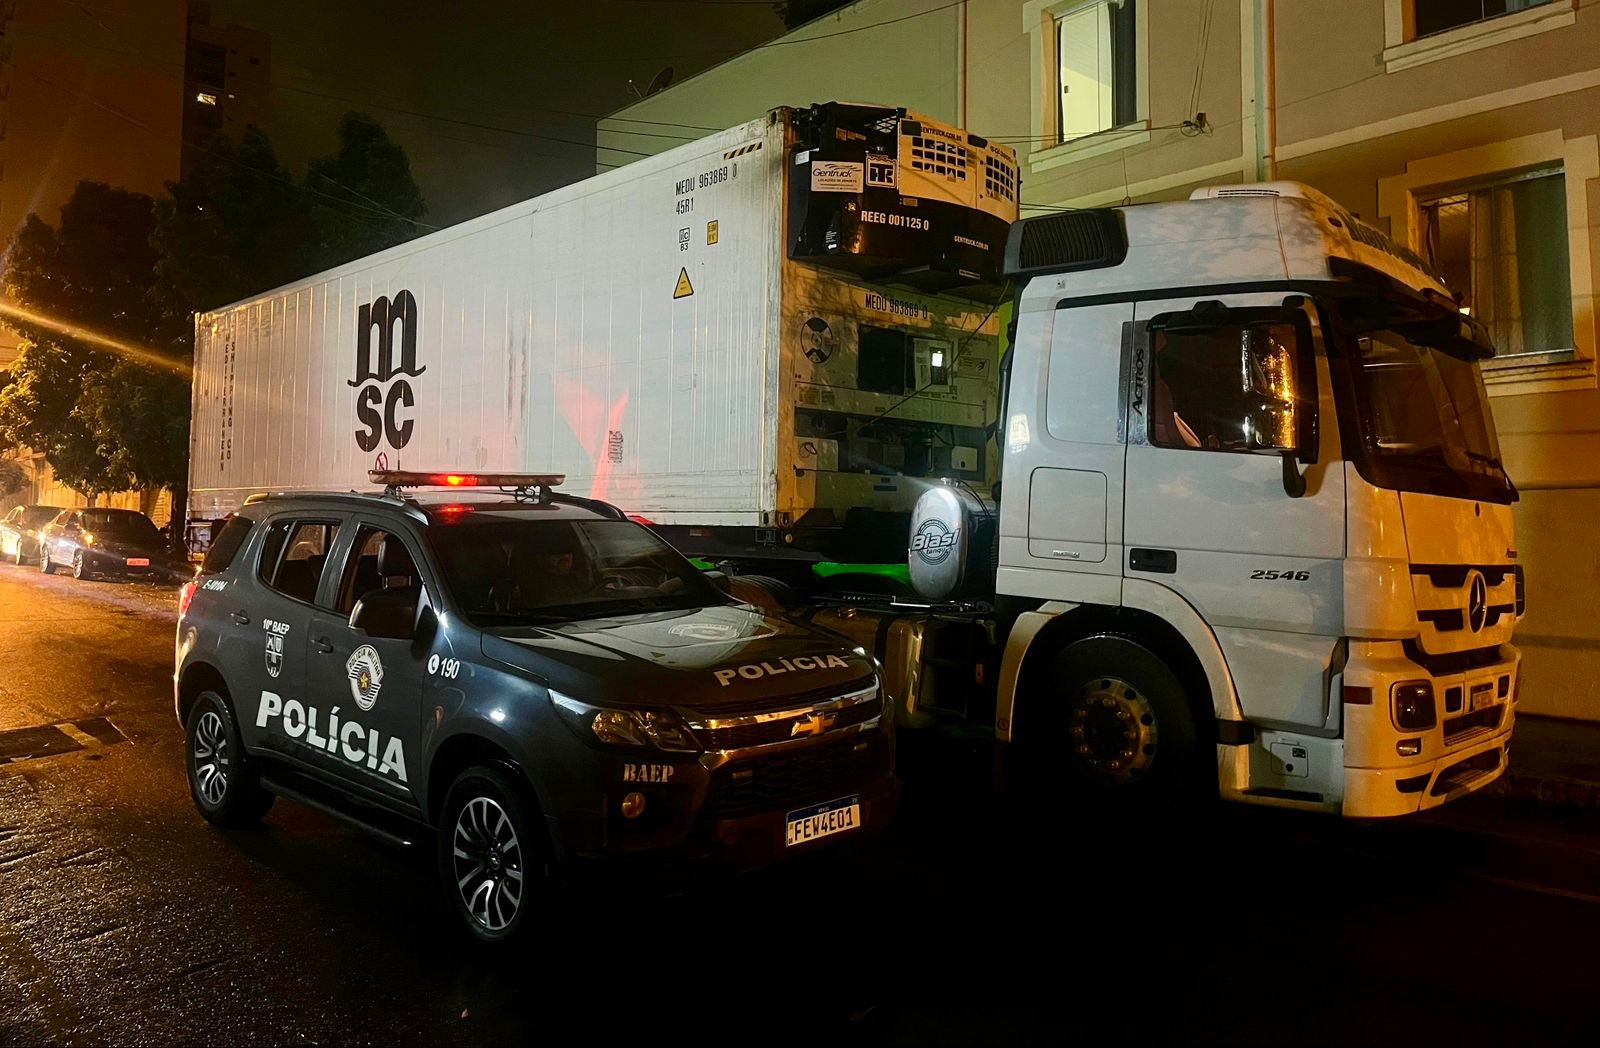 Baep recupera caminhão roubado com carga de carnes avaliada em quase R$ 1 milhão